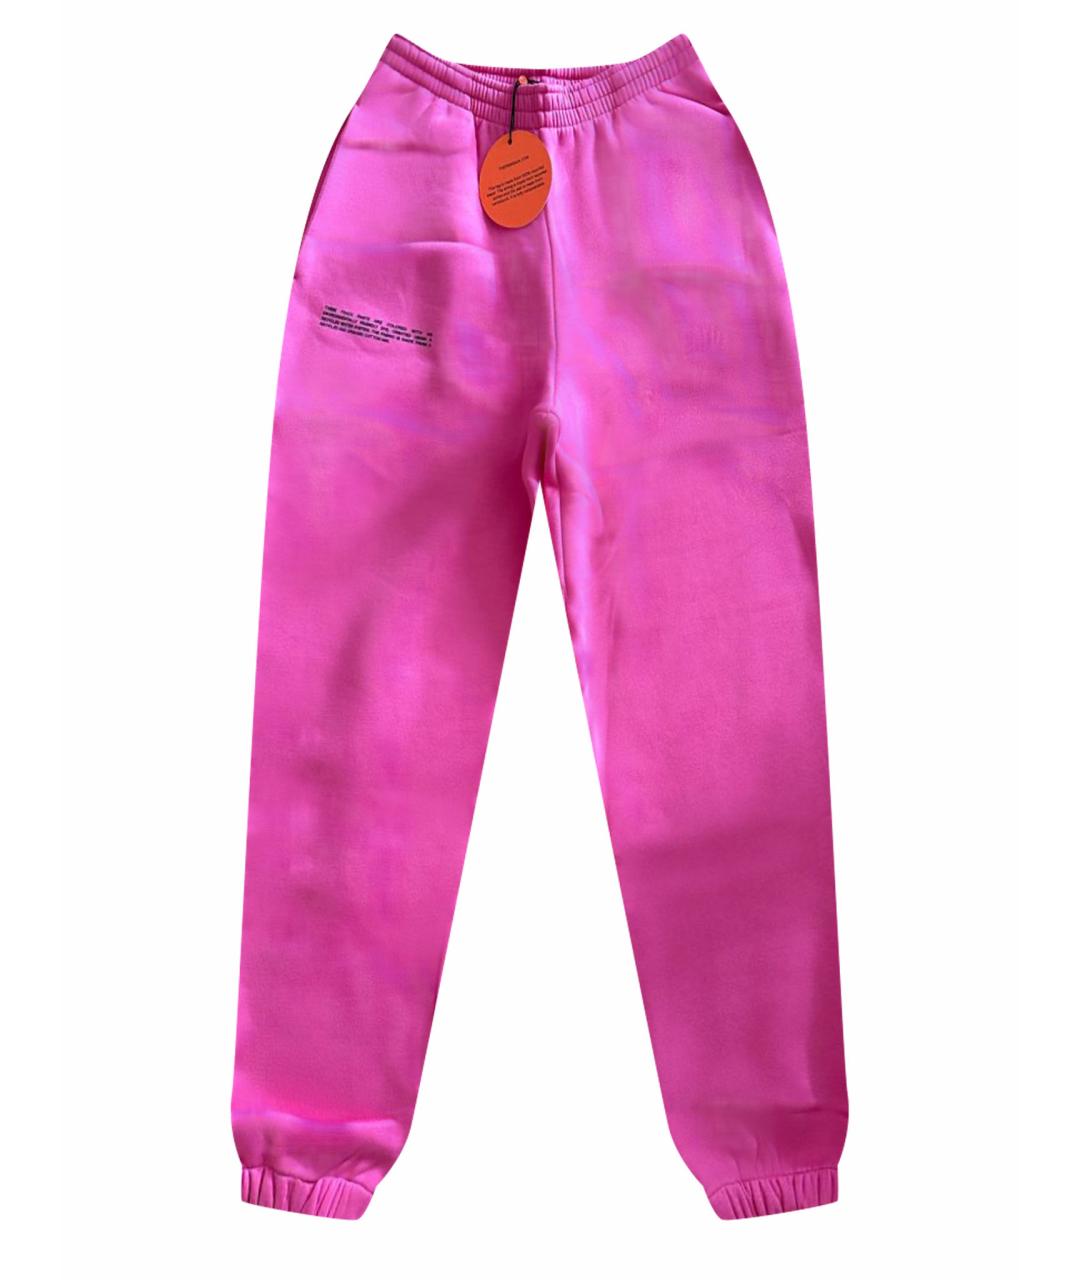 THE PANGAIA Розовые хлопковые спортивные брюки и шорты, фото 1